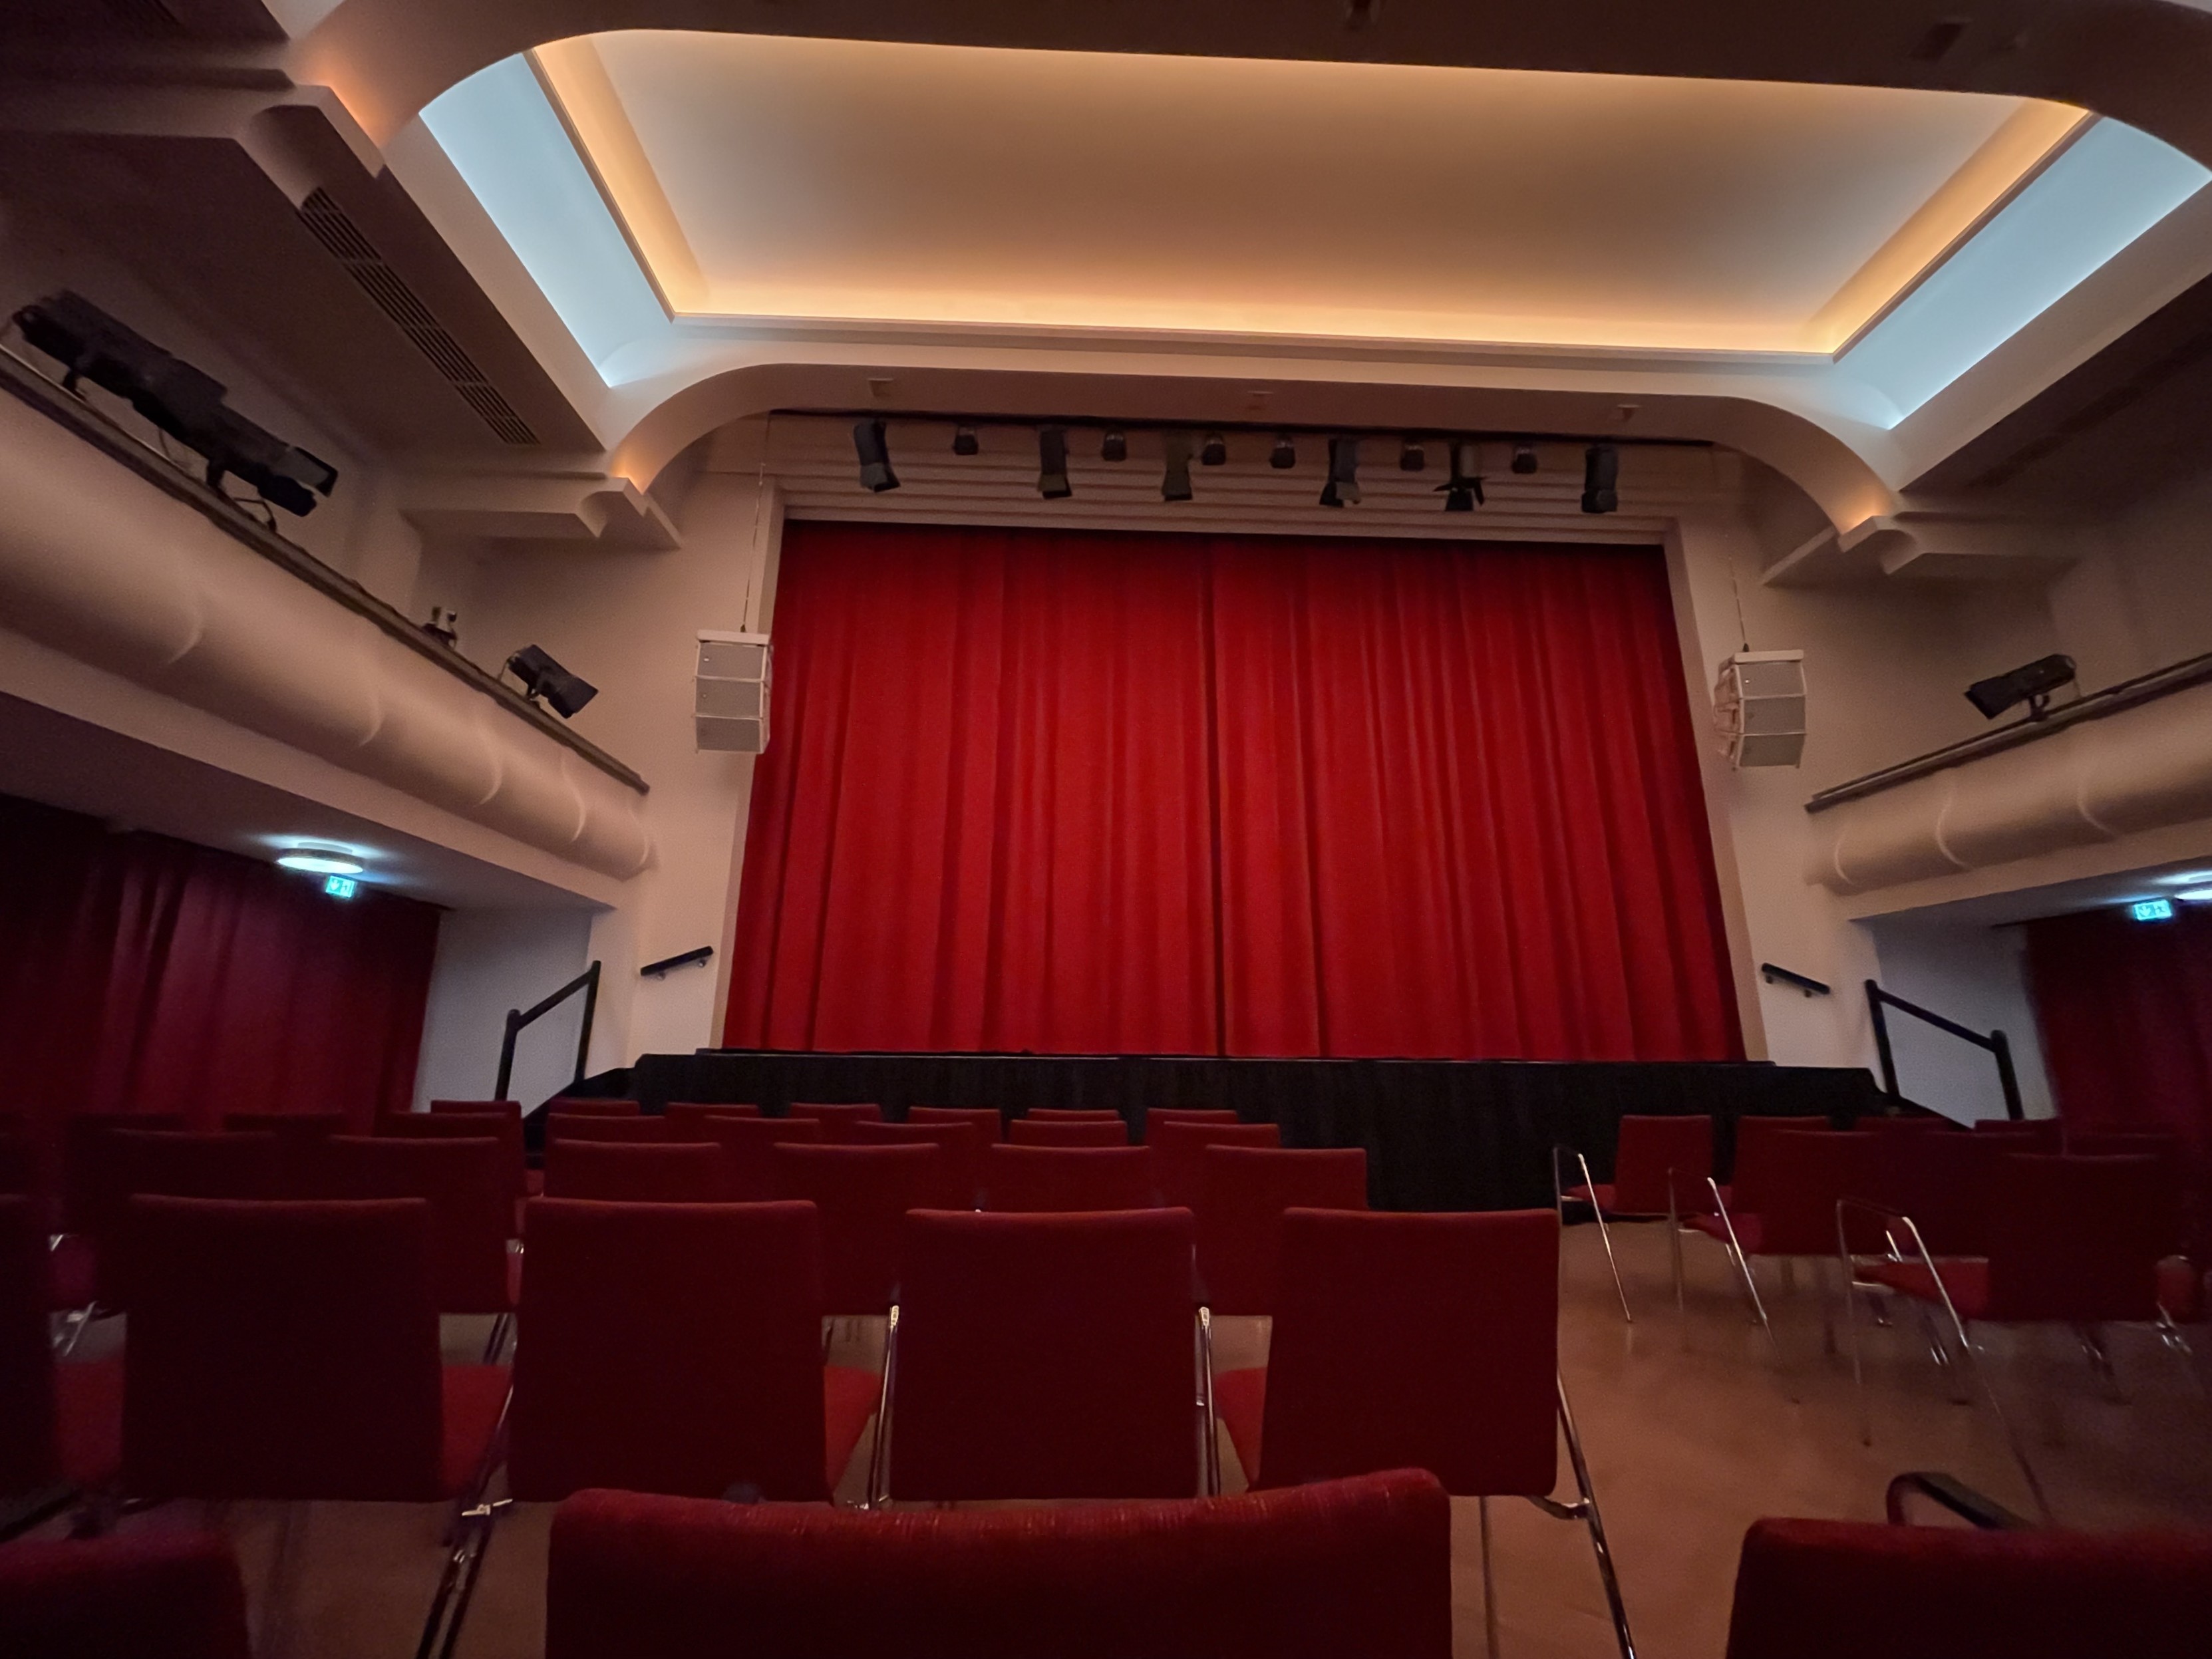 Leeres Theater mit roten Sitzen und einem geschlossenen roten Vorhang auf der Bühne.